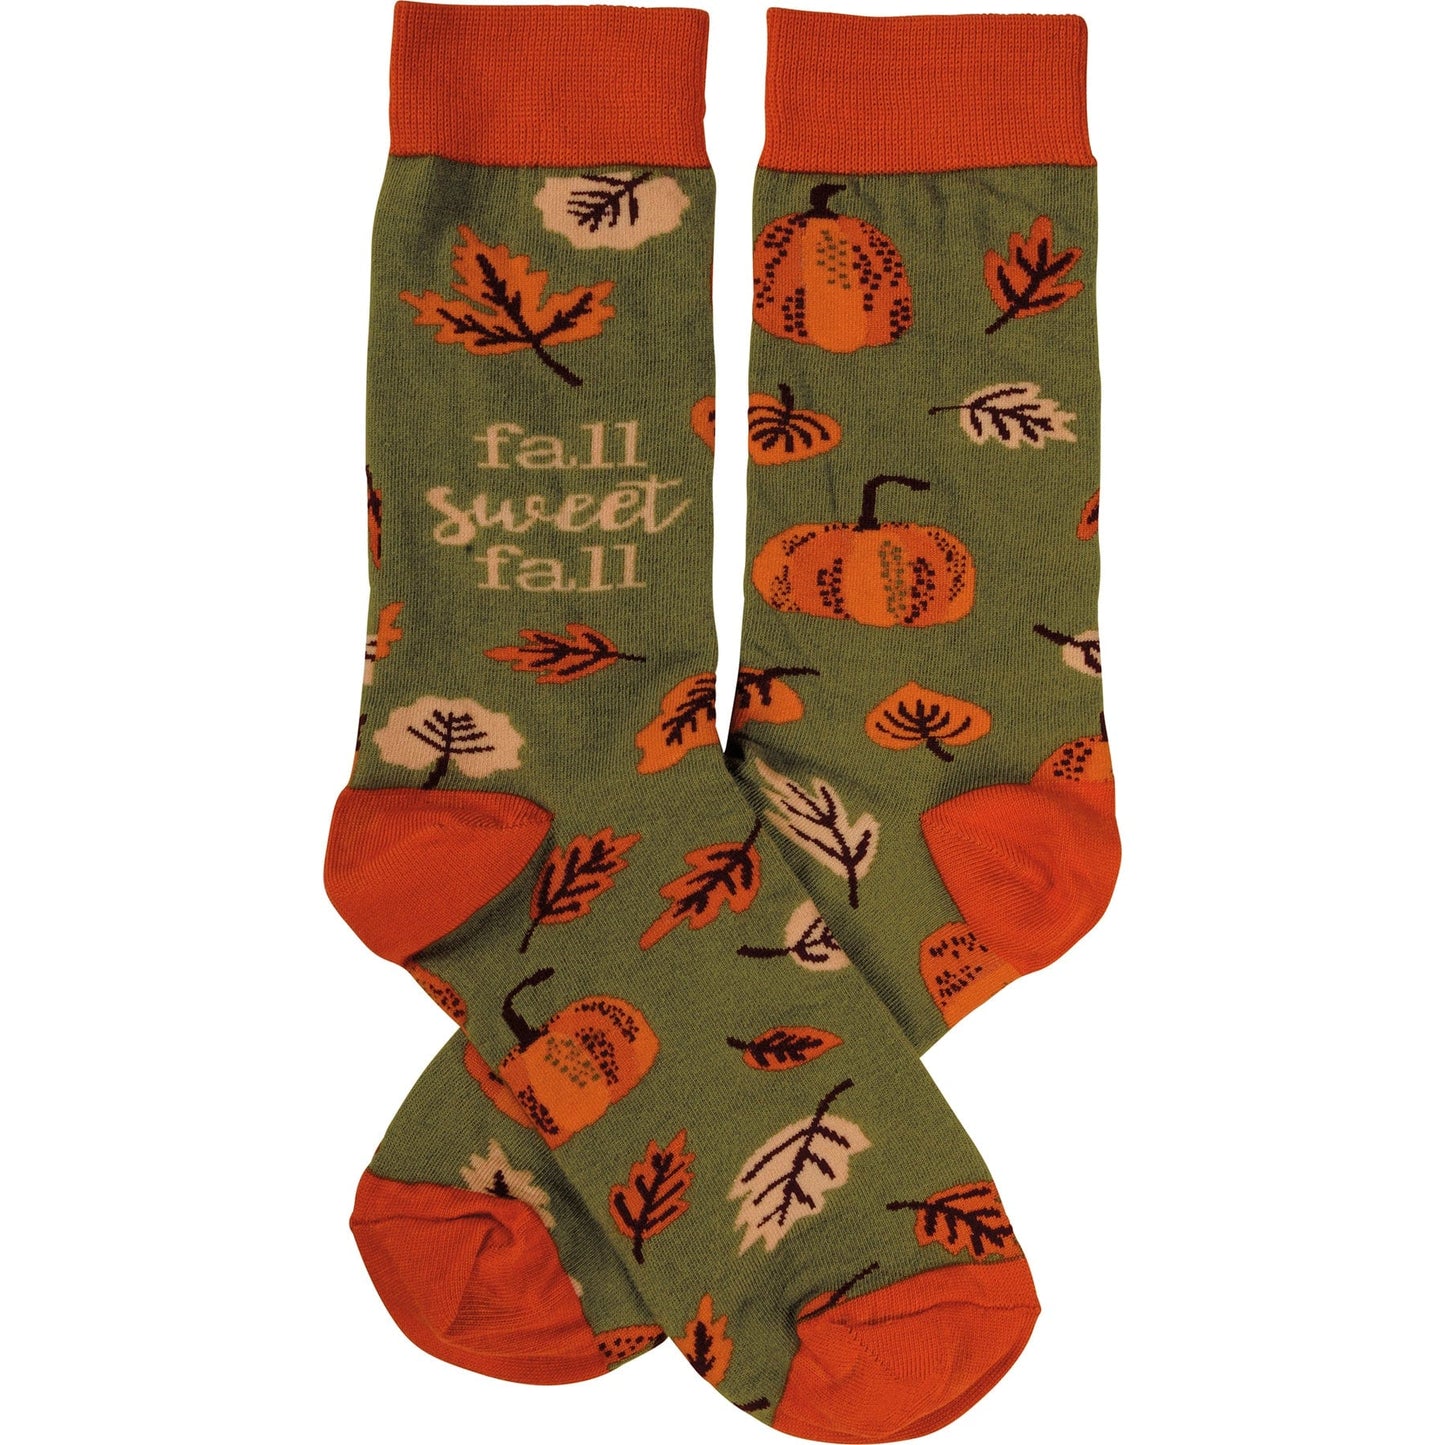 Socks One Size Fits Most Socks - Fall Sweet Fall PBK-109882